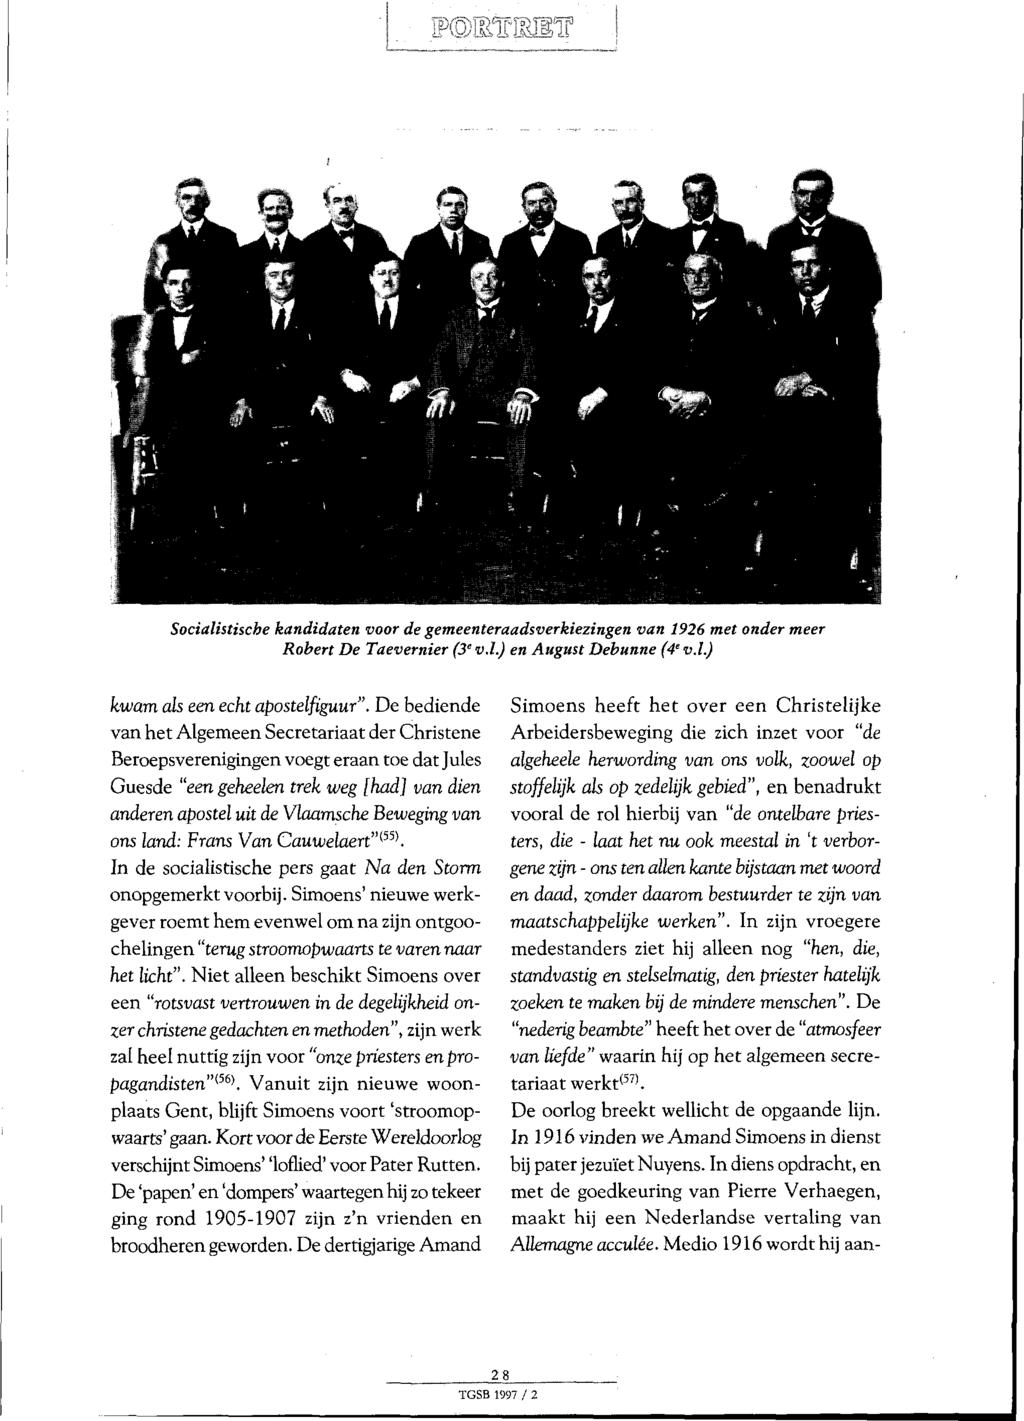 wmmirmsw Socialistische kandidaten voor de gemeenteraadsverkiezingen van 1926 met onder meer Robert De Taevernier (3' v.l.) en August Debunne (4' v.l.) ons land: Frans Van Cauwelaert" m.